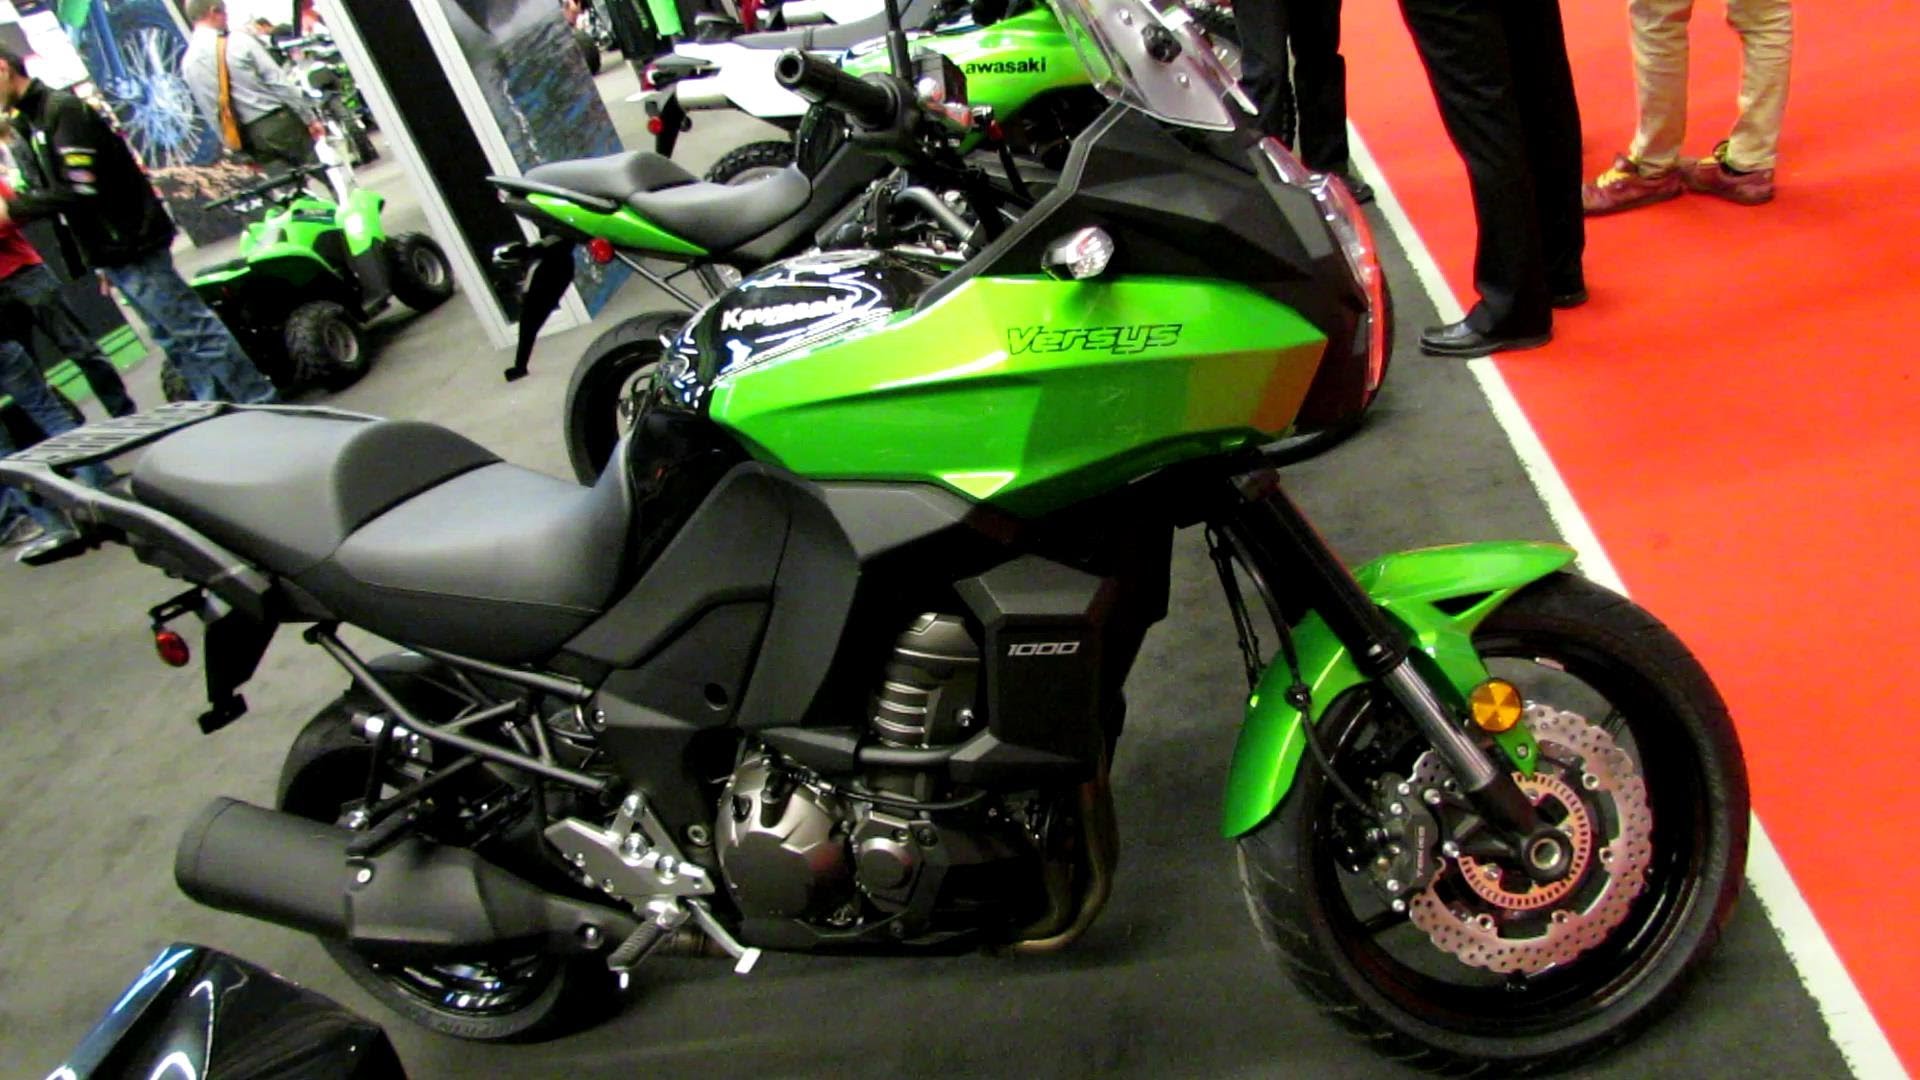 2014 Kawasaki Versys 1000 #7